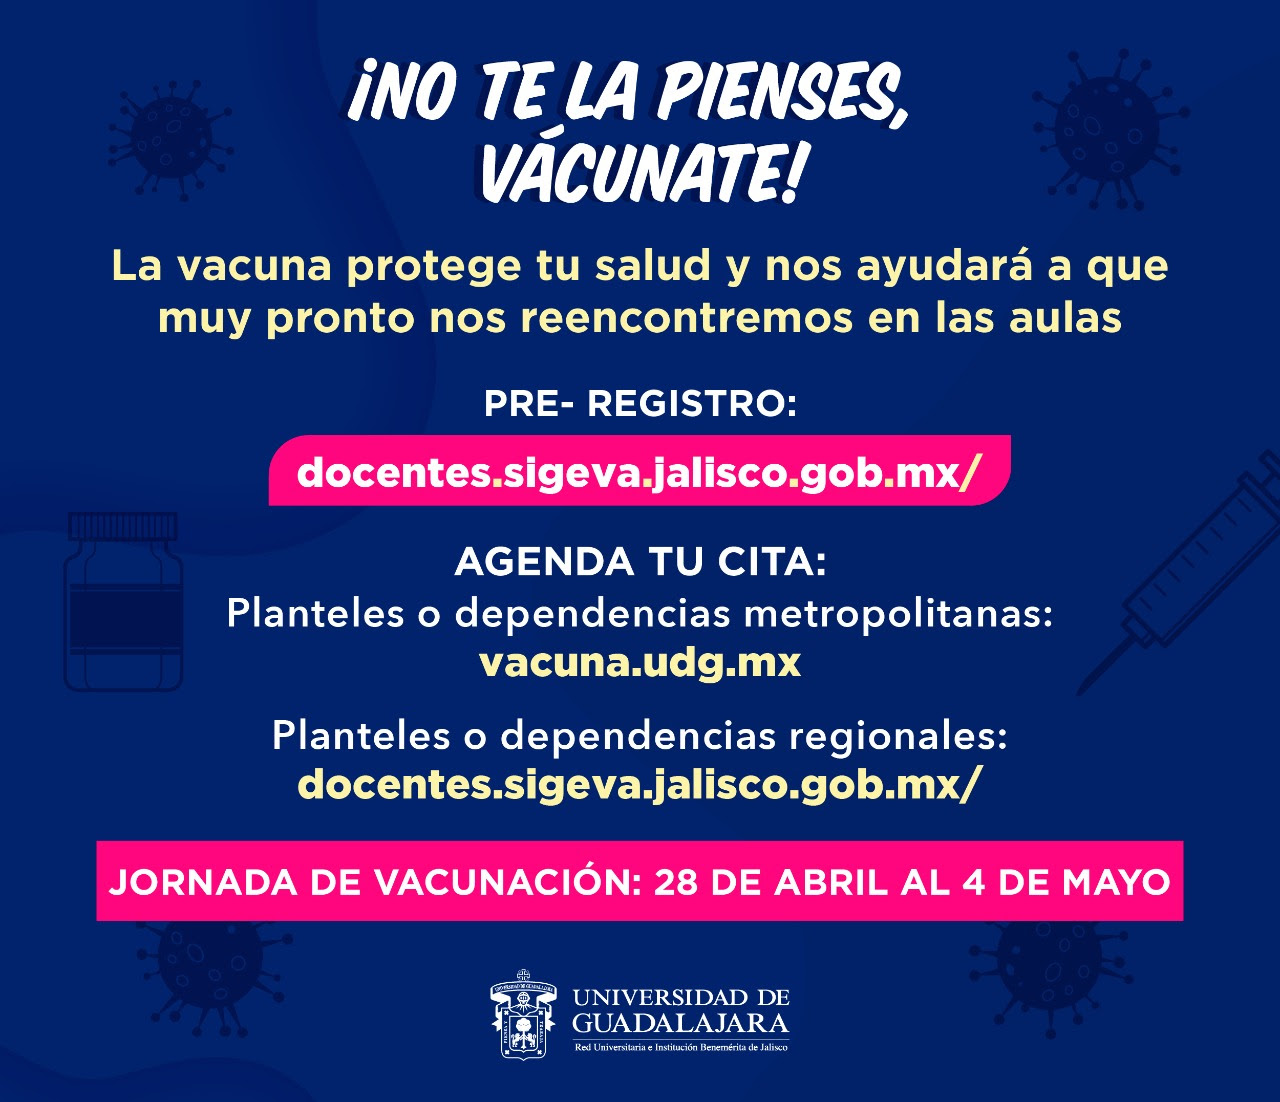 Roberto larios i un1ón jalisco | 08/06/2021 05:15. Listo El Proceso De Vacunacion Para Trabajadores De La Udeg Centro Universitario De Los Altos